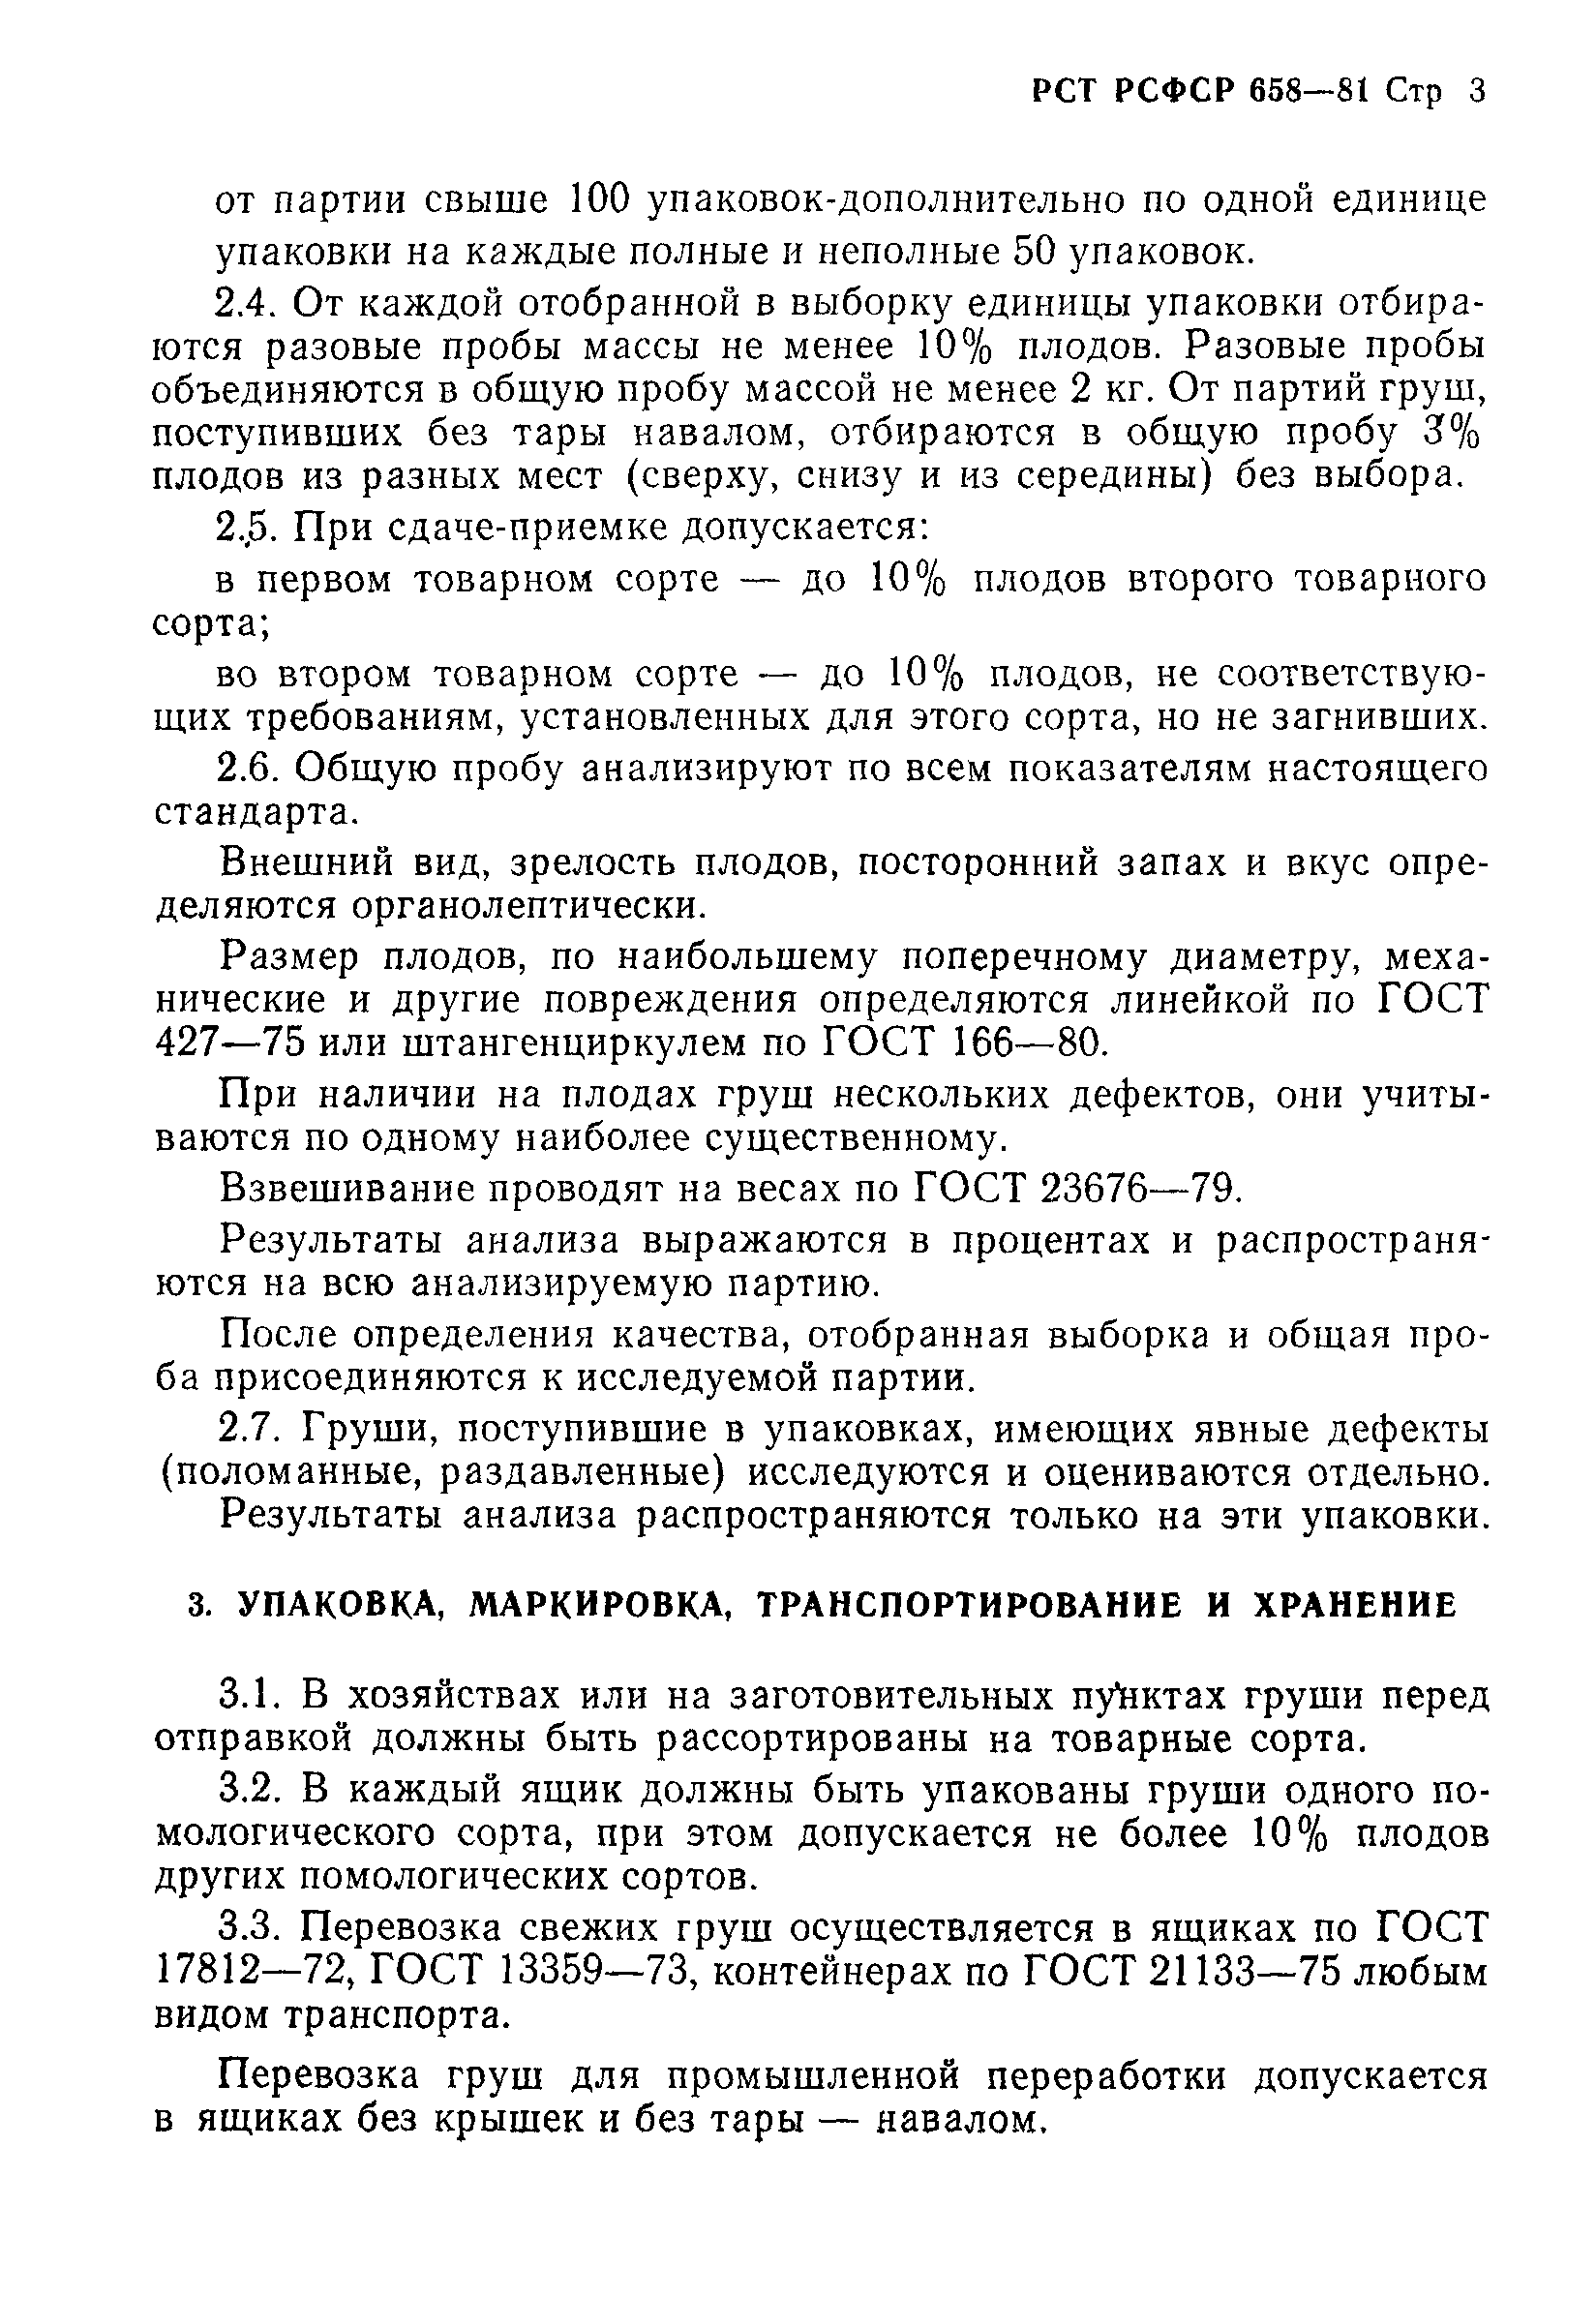 РСТ РСФСР 658-81